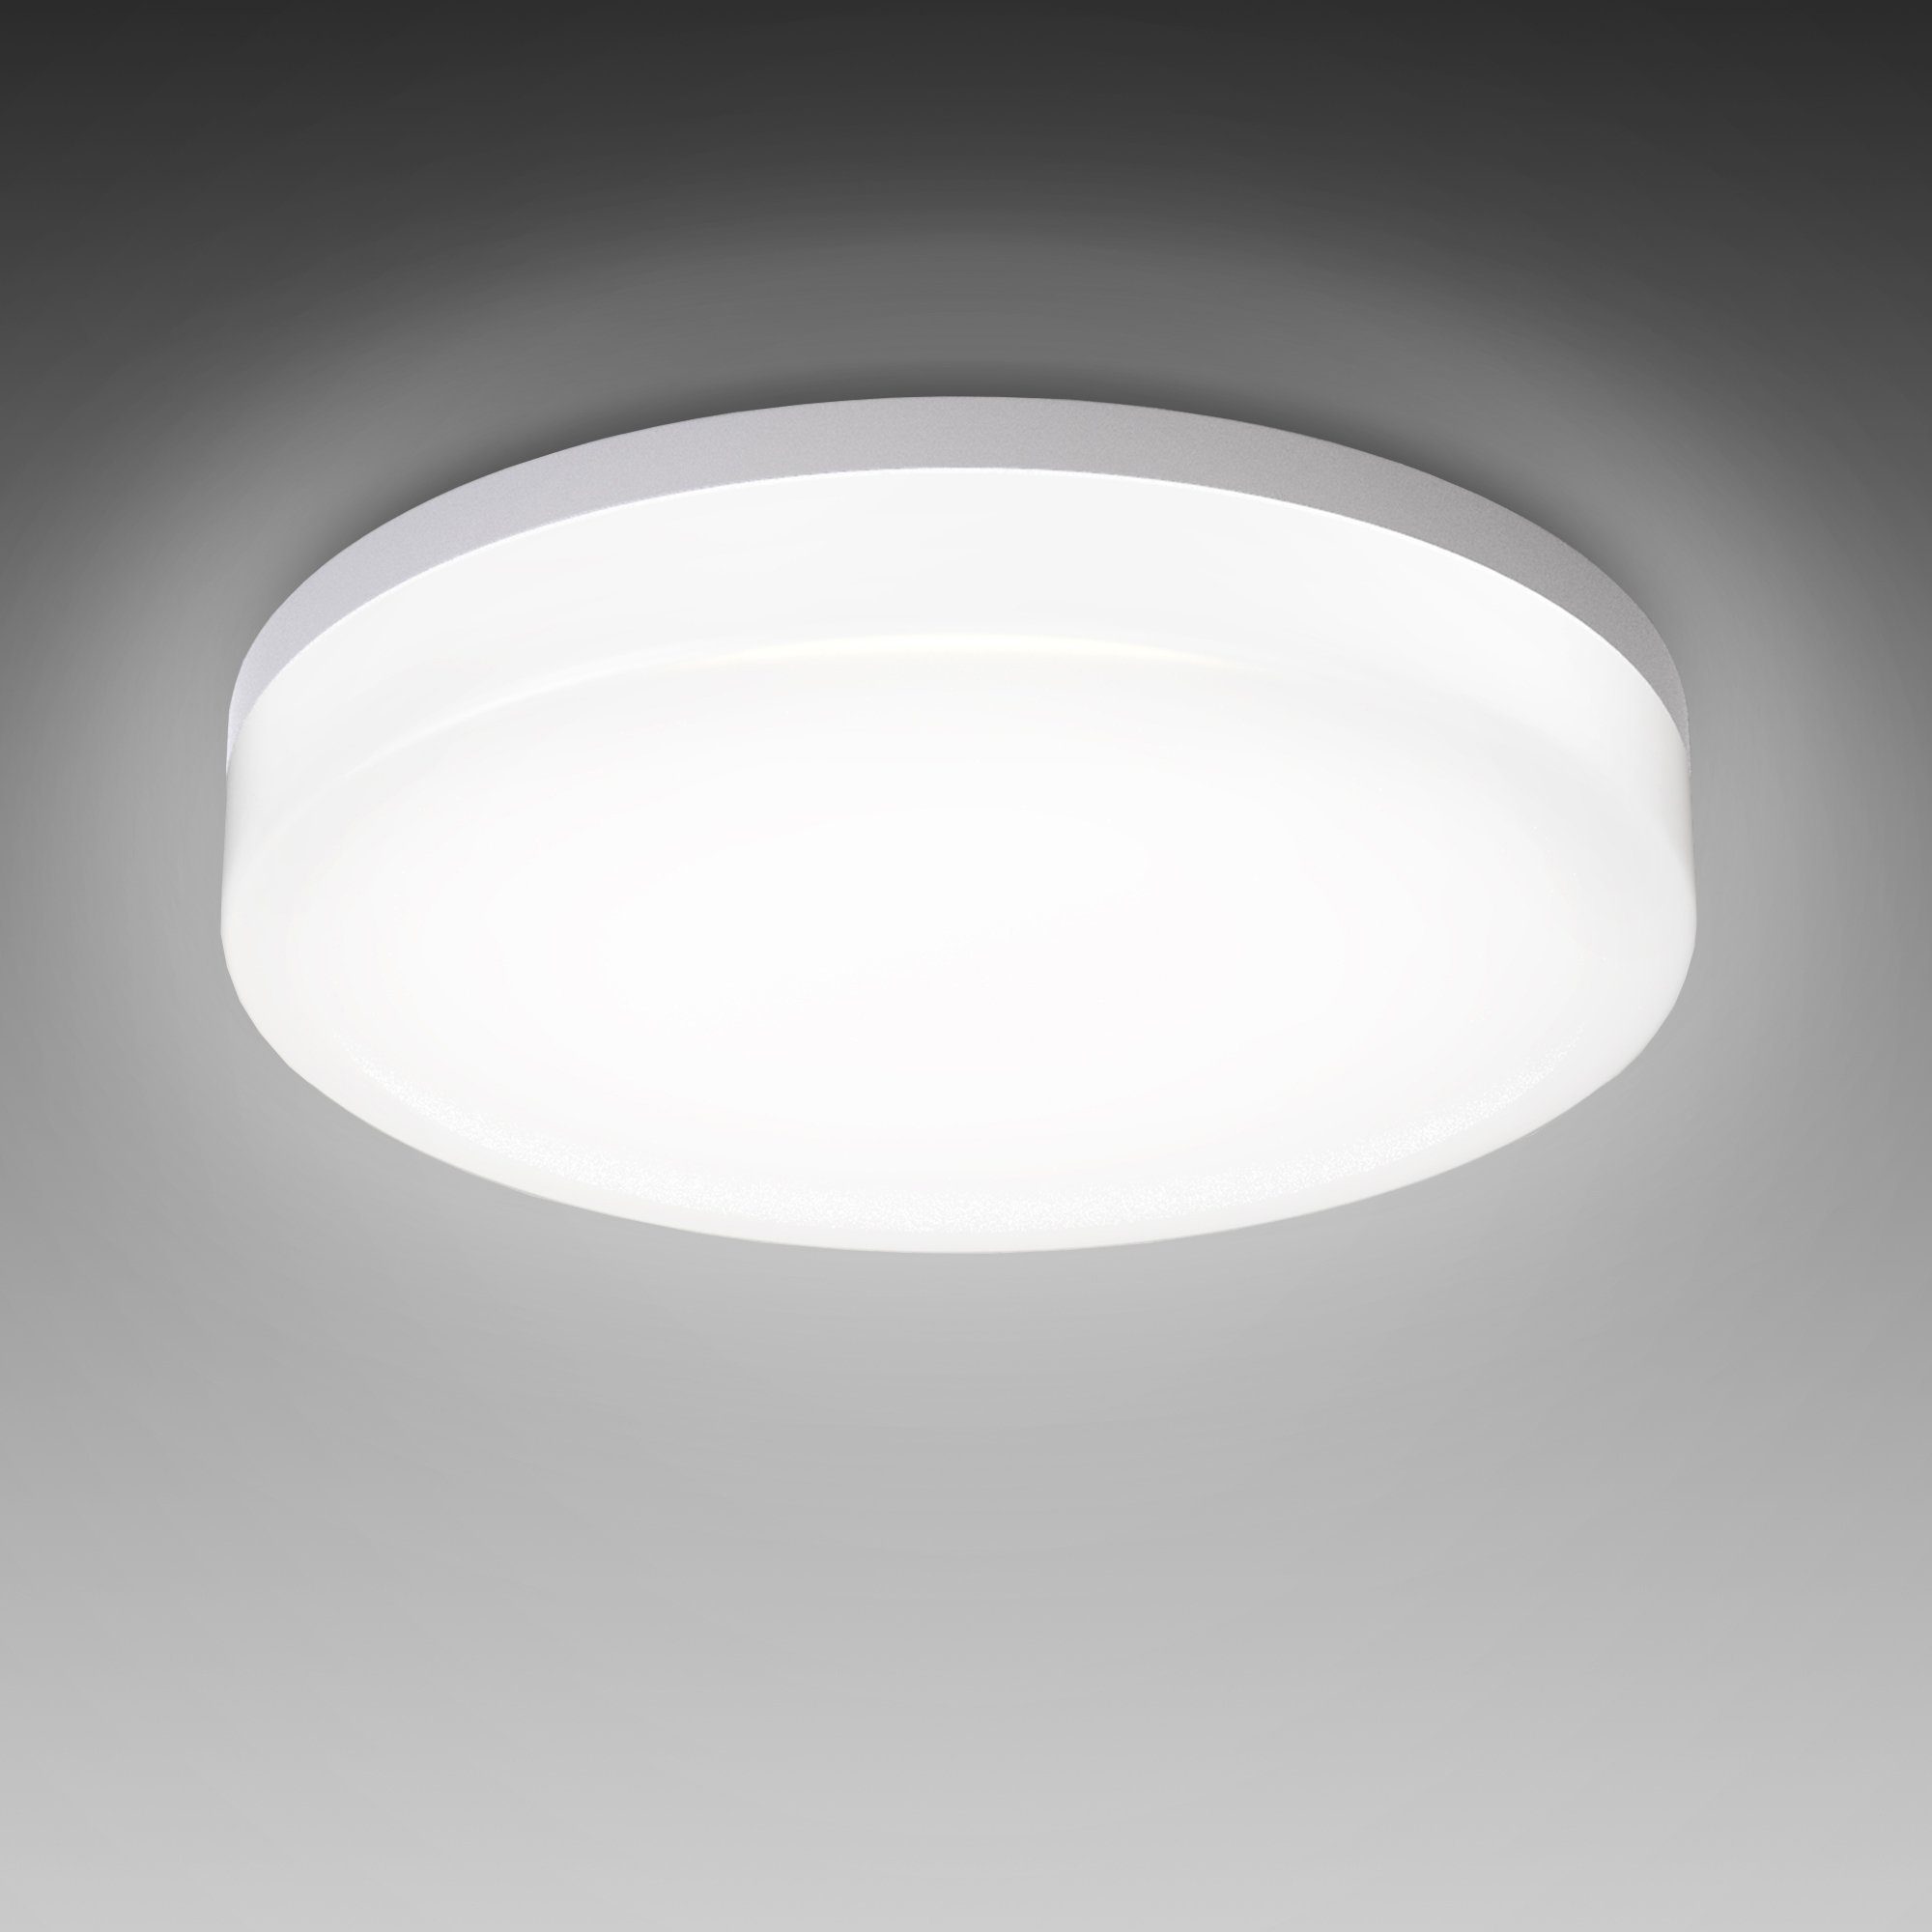 LED IP54, Leuchte Neutralweiß, 13W, LED Badezimmer-Lampe, fest inkl. Deckenleuchte, Deckenlampe, integriert, 13W B.K.Licht 1500lm